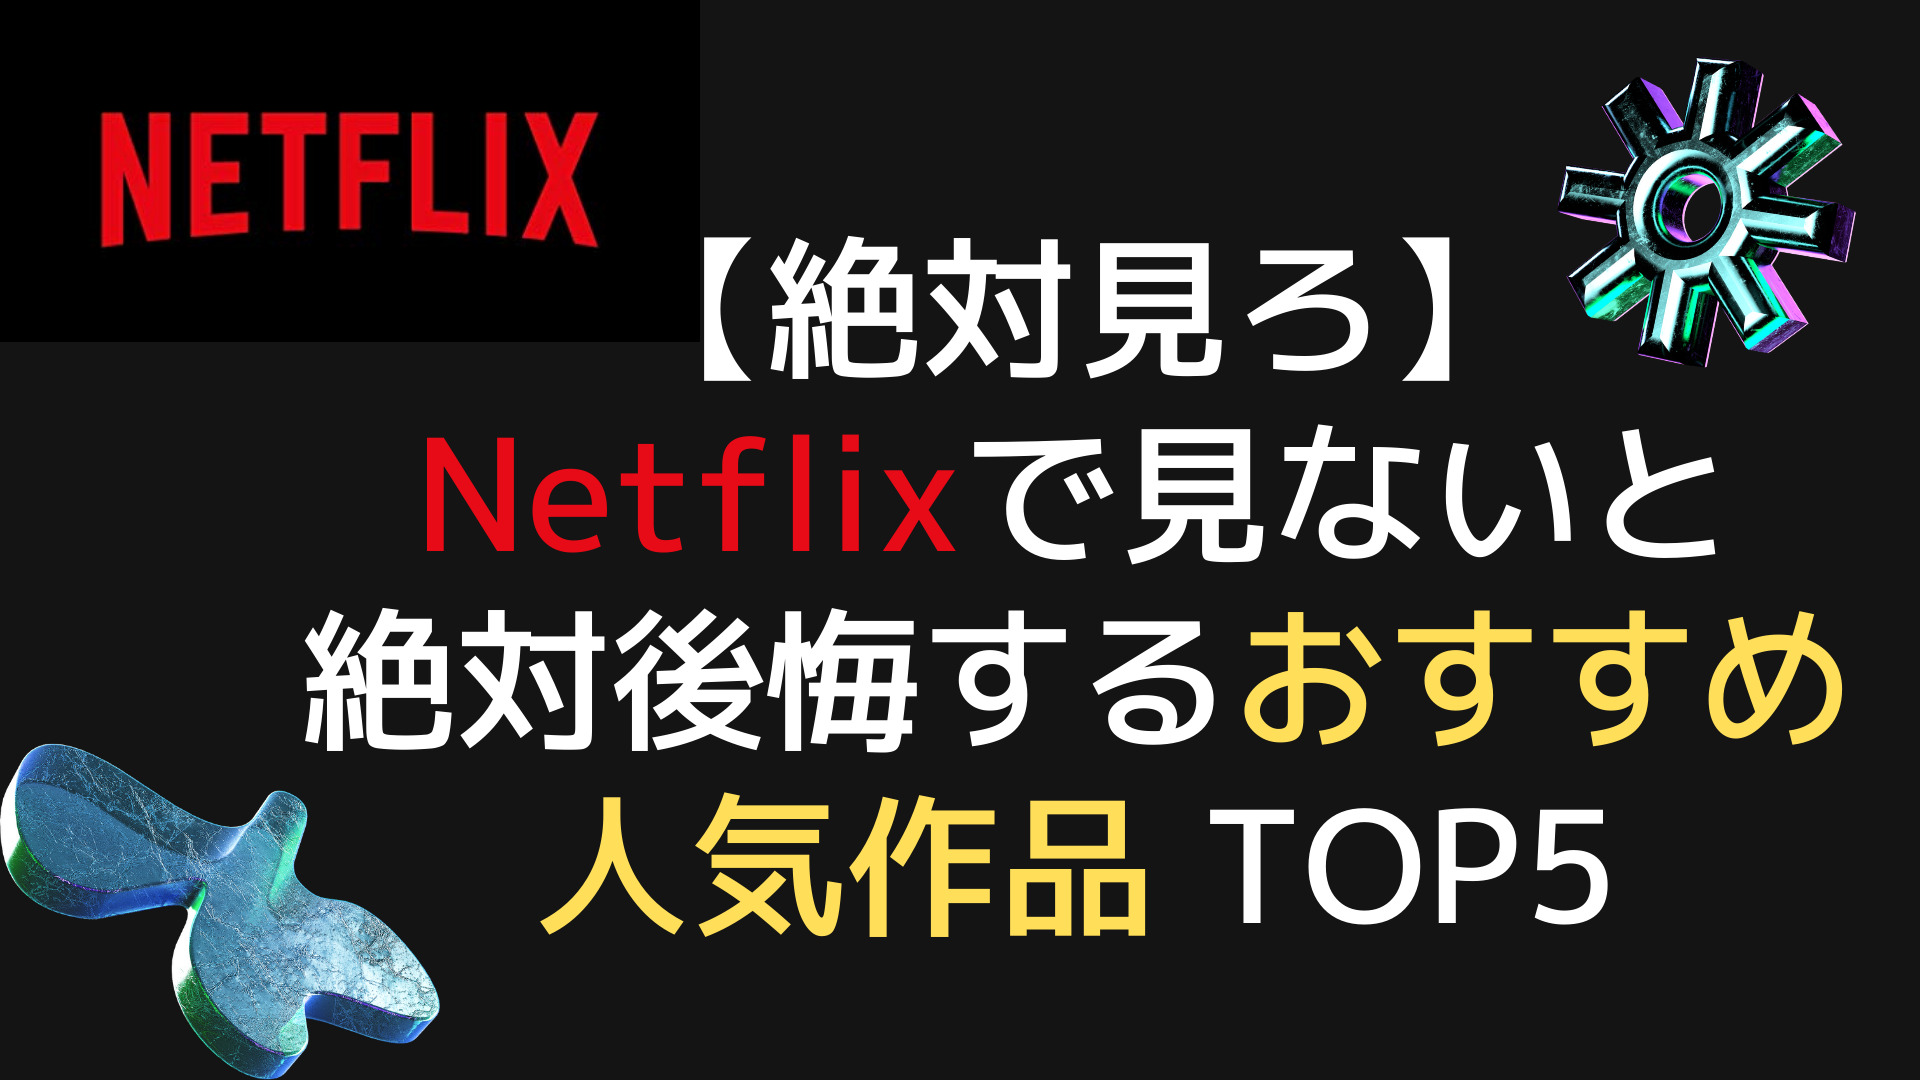 【絶対見ろ】Netflixで見ないと絶対後悔するおすすめ人気作品 TOP5